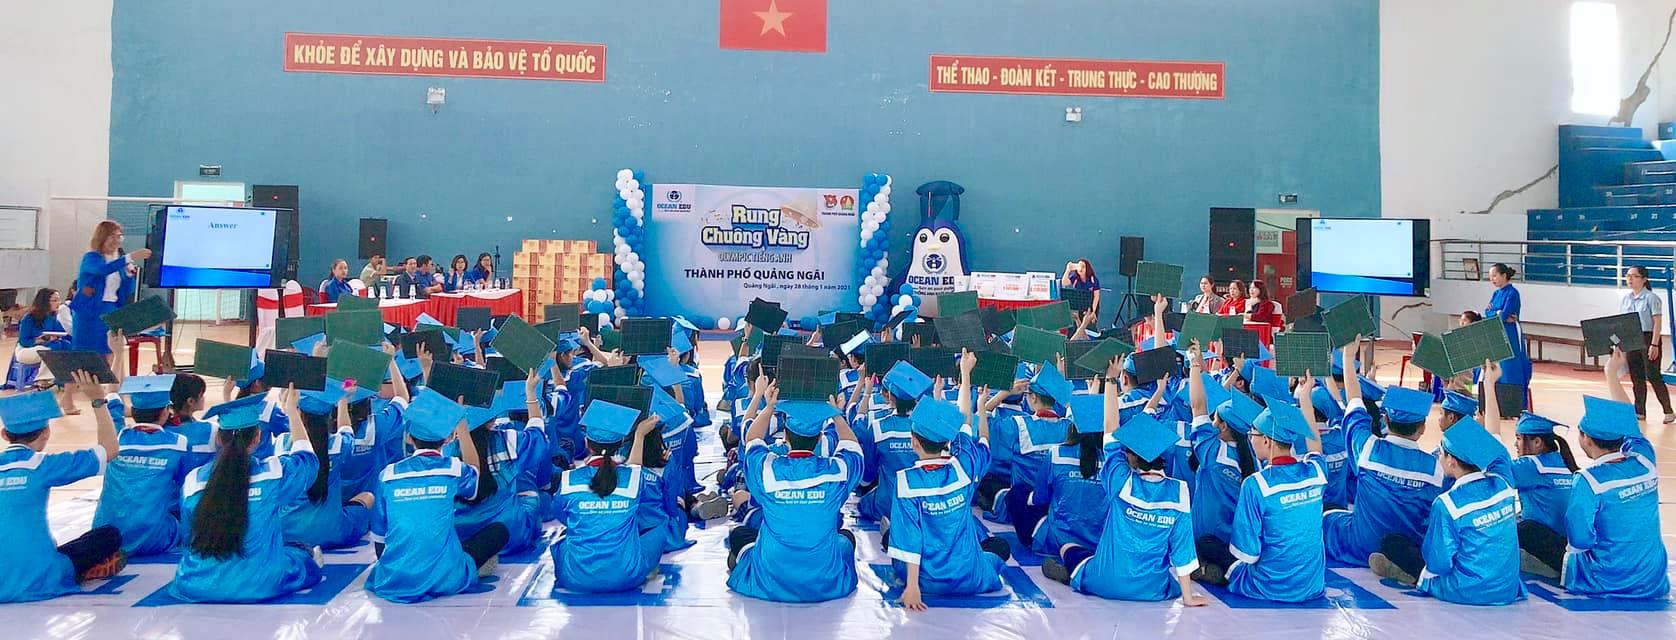 Thành phố Quảng Ngãi tổ chức Hội thi Rung chuông vàng Olympic Tiếng Anh thành phố Quảng Ngãi năm 2021